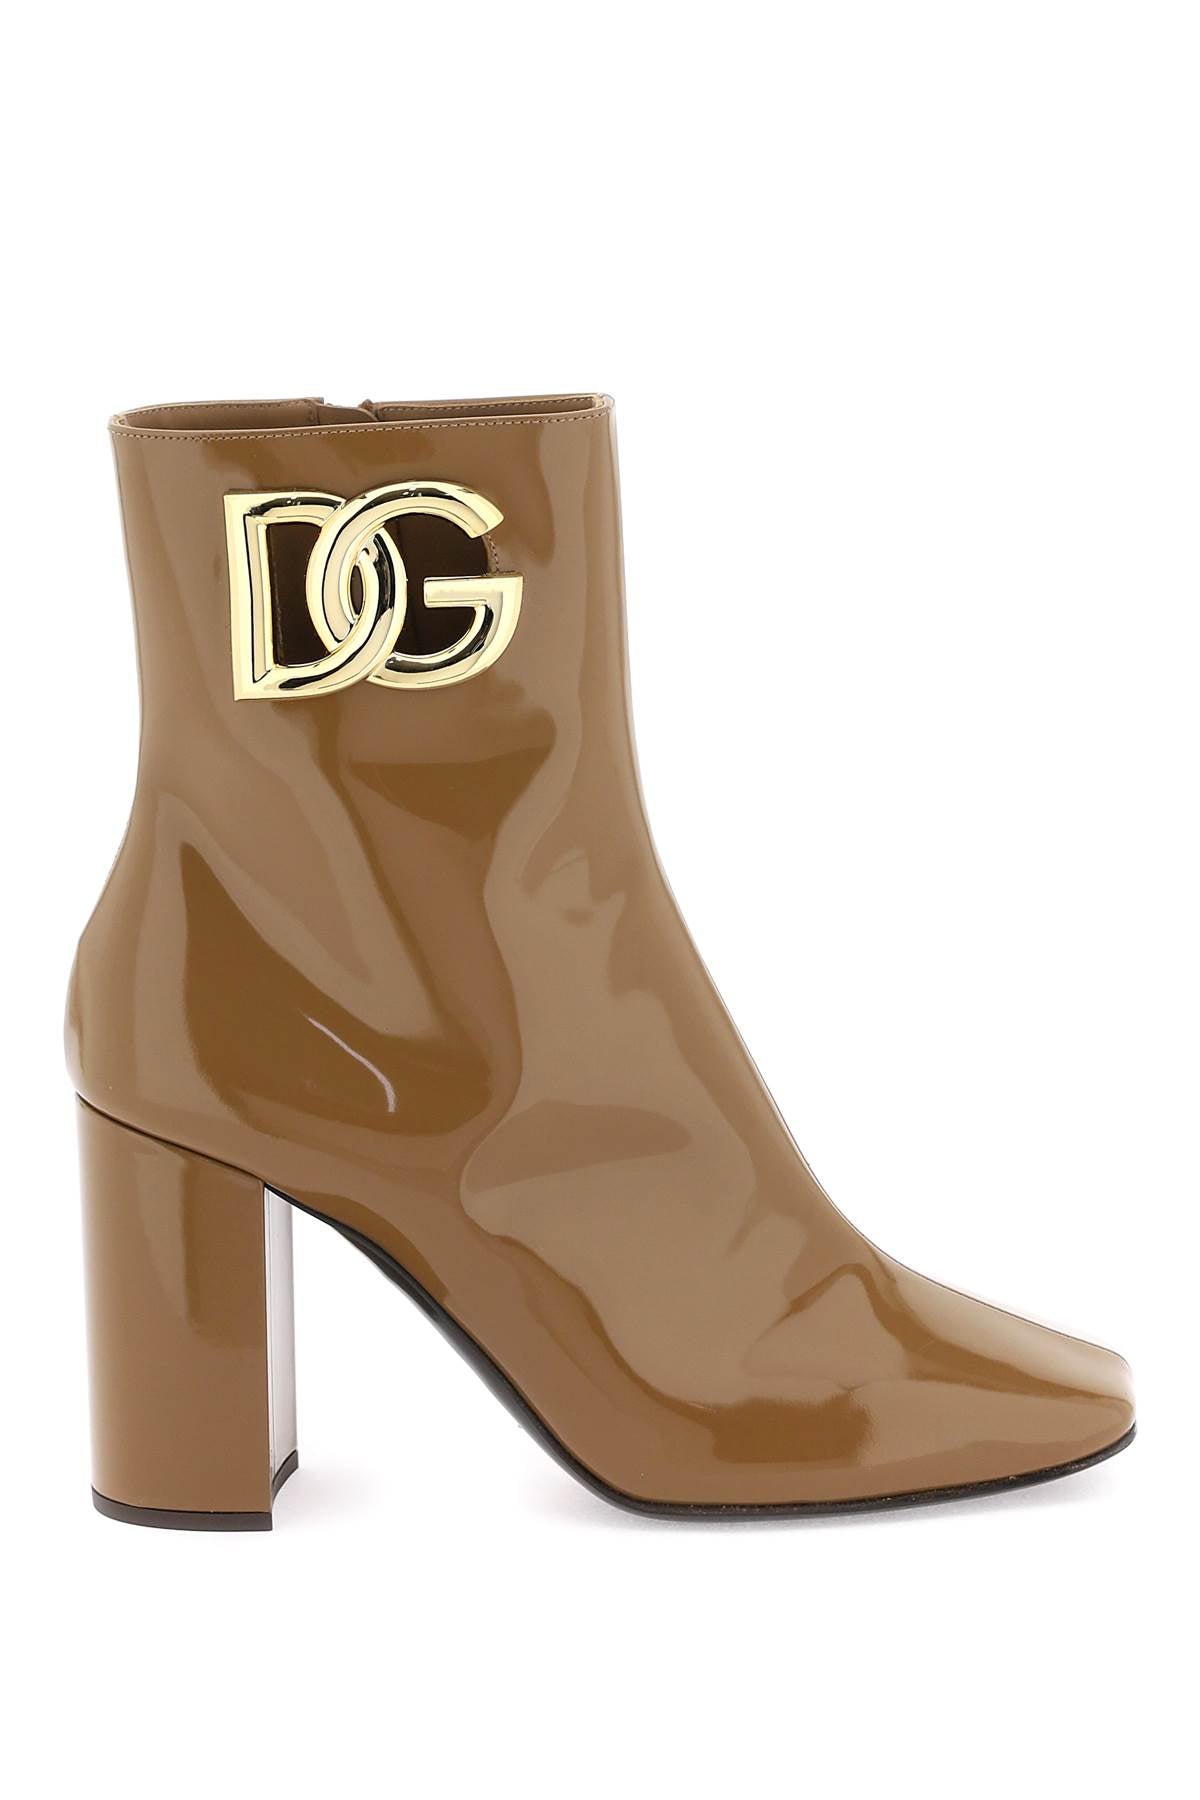 dg logo ankle boots